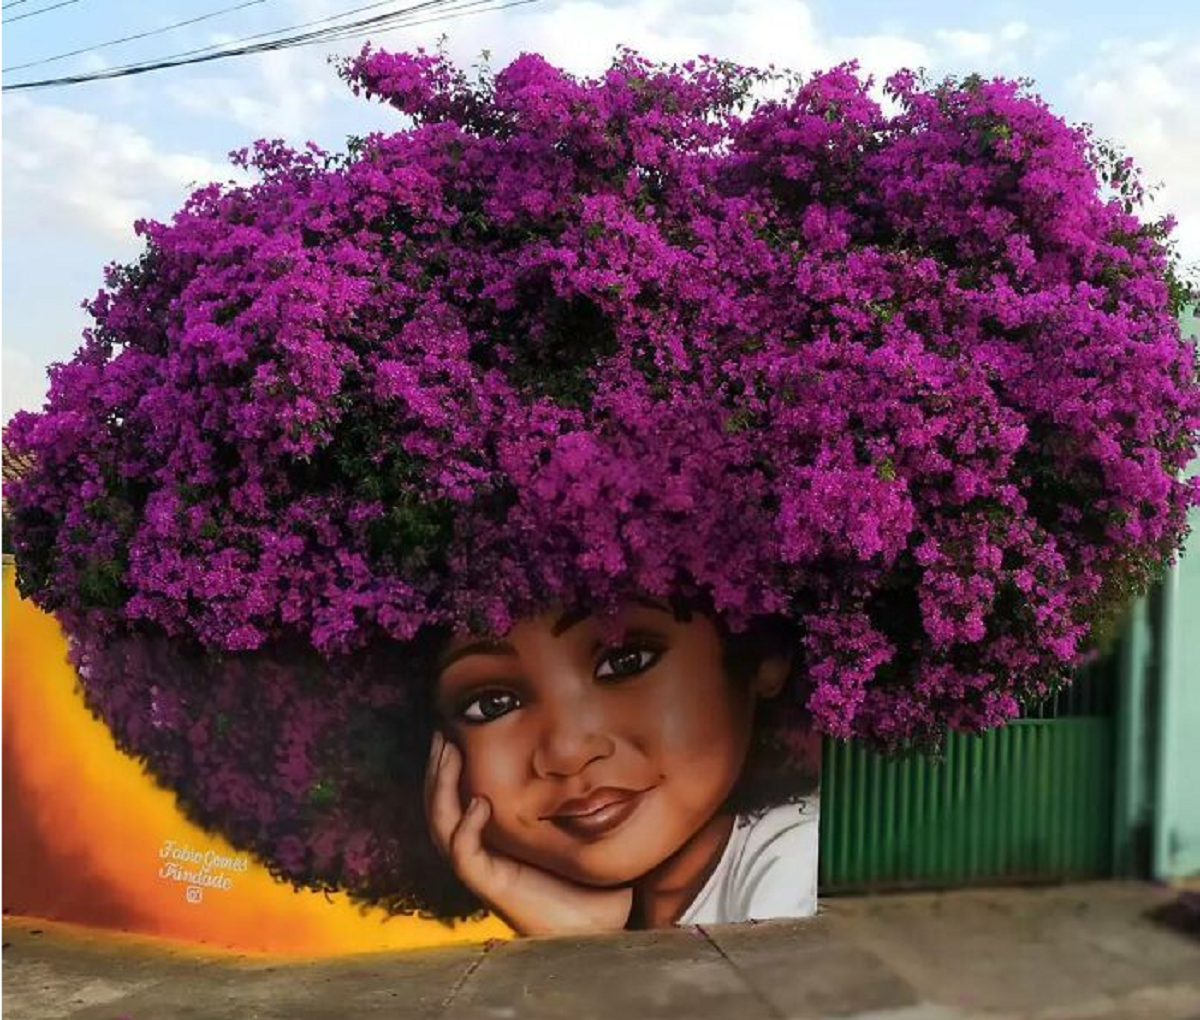 sabervivermais.com - Artista no Brasil viraliza nas Redes Sociais após usar árvores como 'cabelo' para seus retratos de mulheres